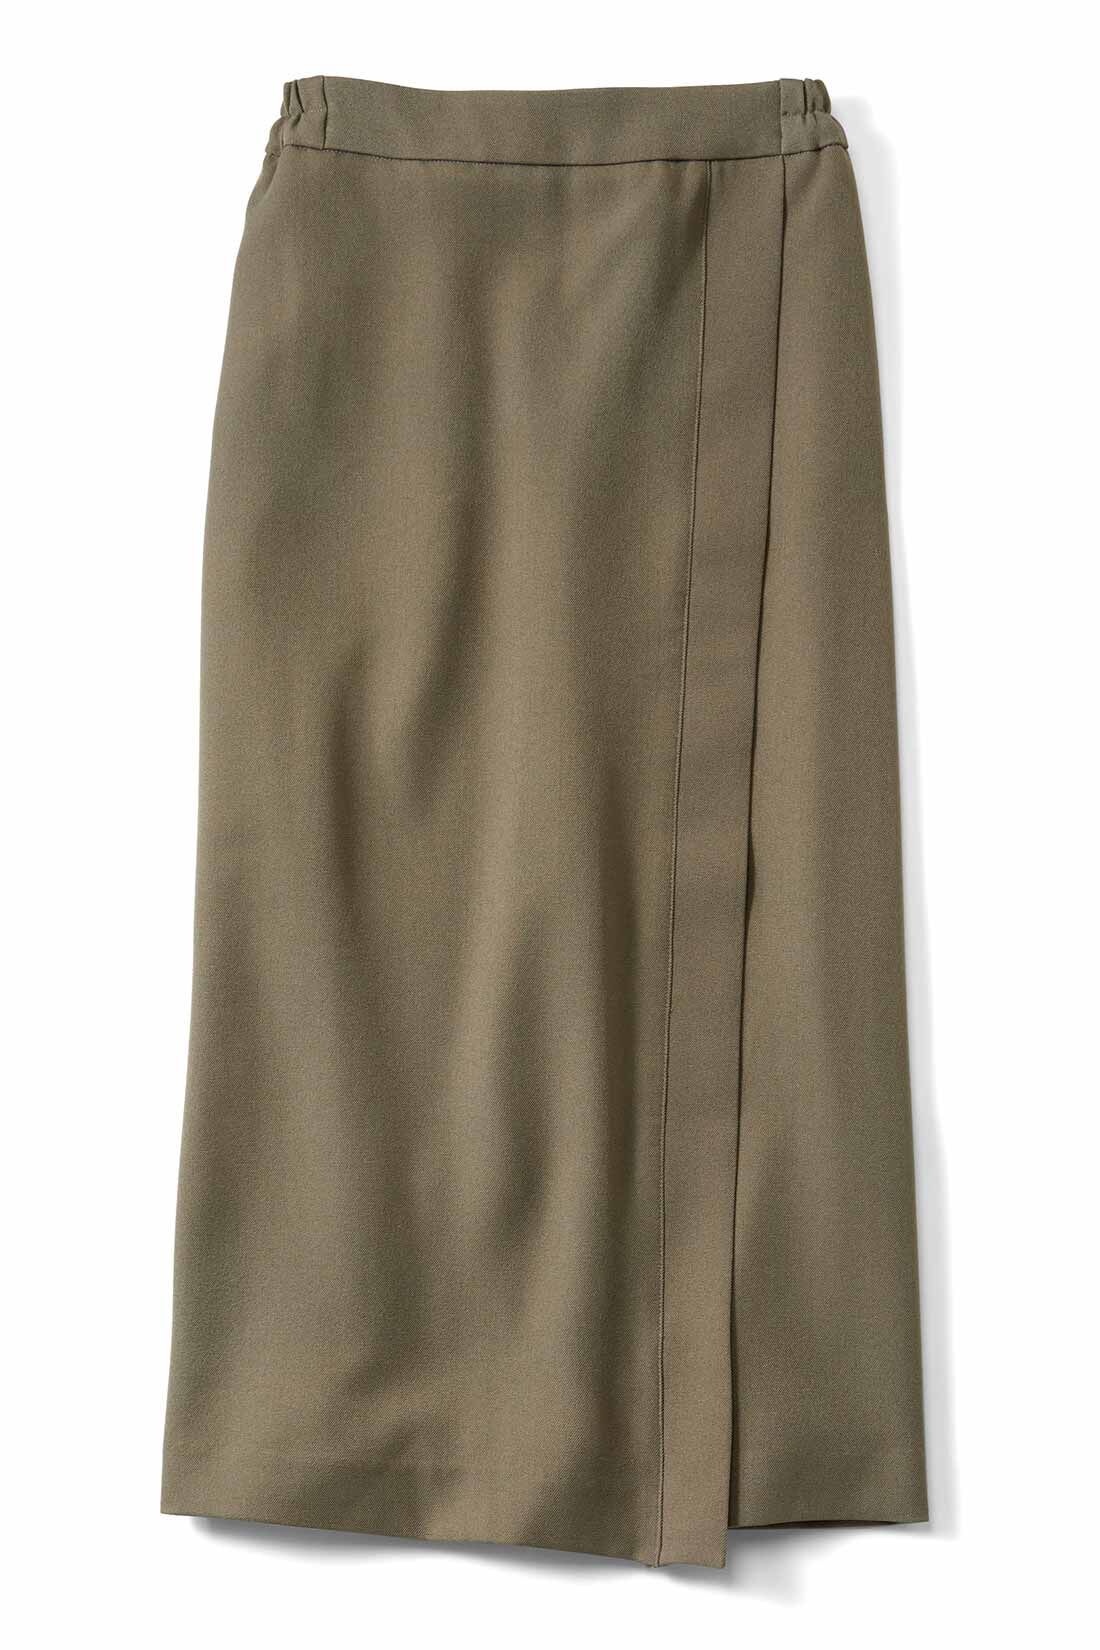 IEDIT|IEDIT[イディット]　UVカットがうれしい！ スマート見えして伸びやかな サラリとした着心地のIラインスカート|〈グレイッシュカーキ〉